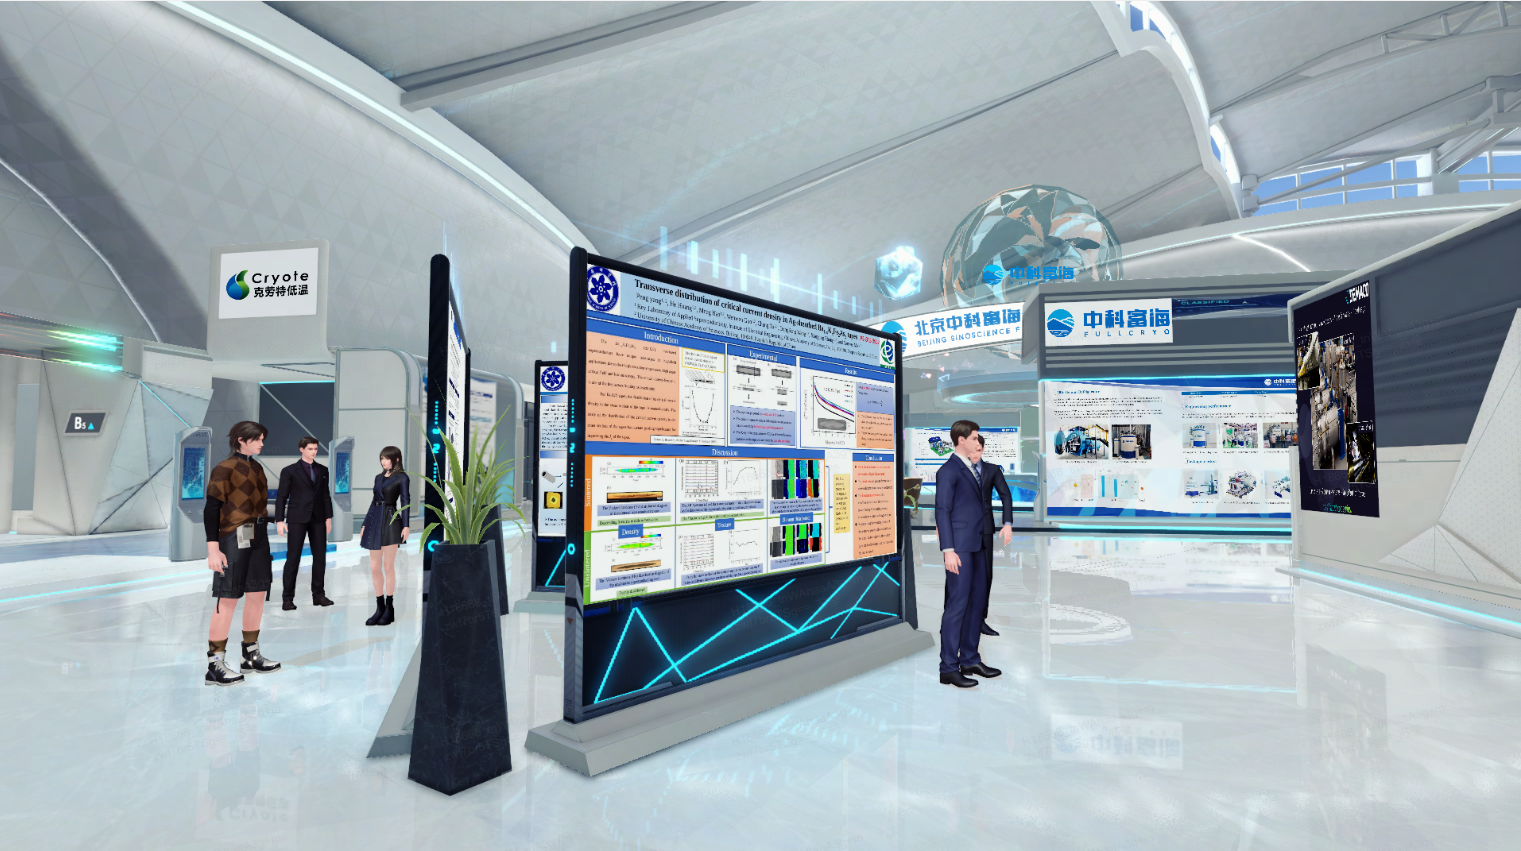 这是一张现代科技展览会的图片，人们在展板前参观，展厅内装饰现代且科技感十足。